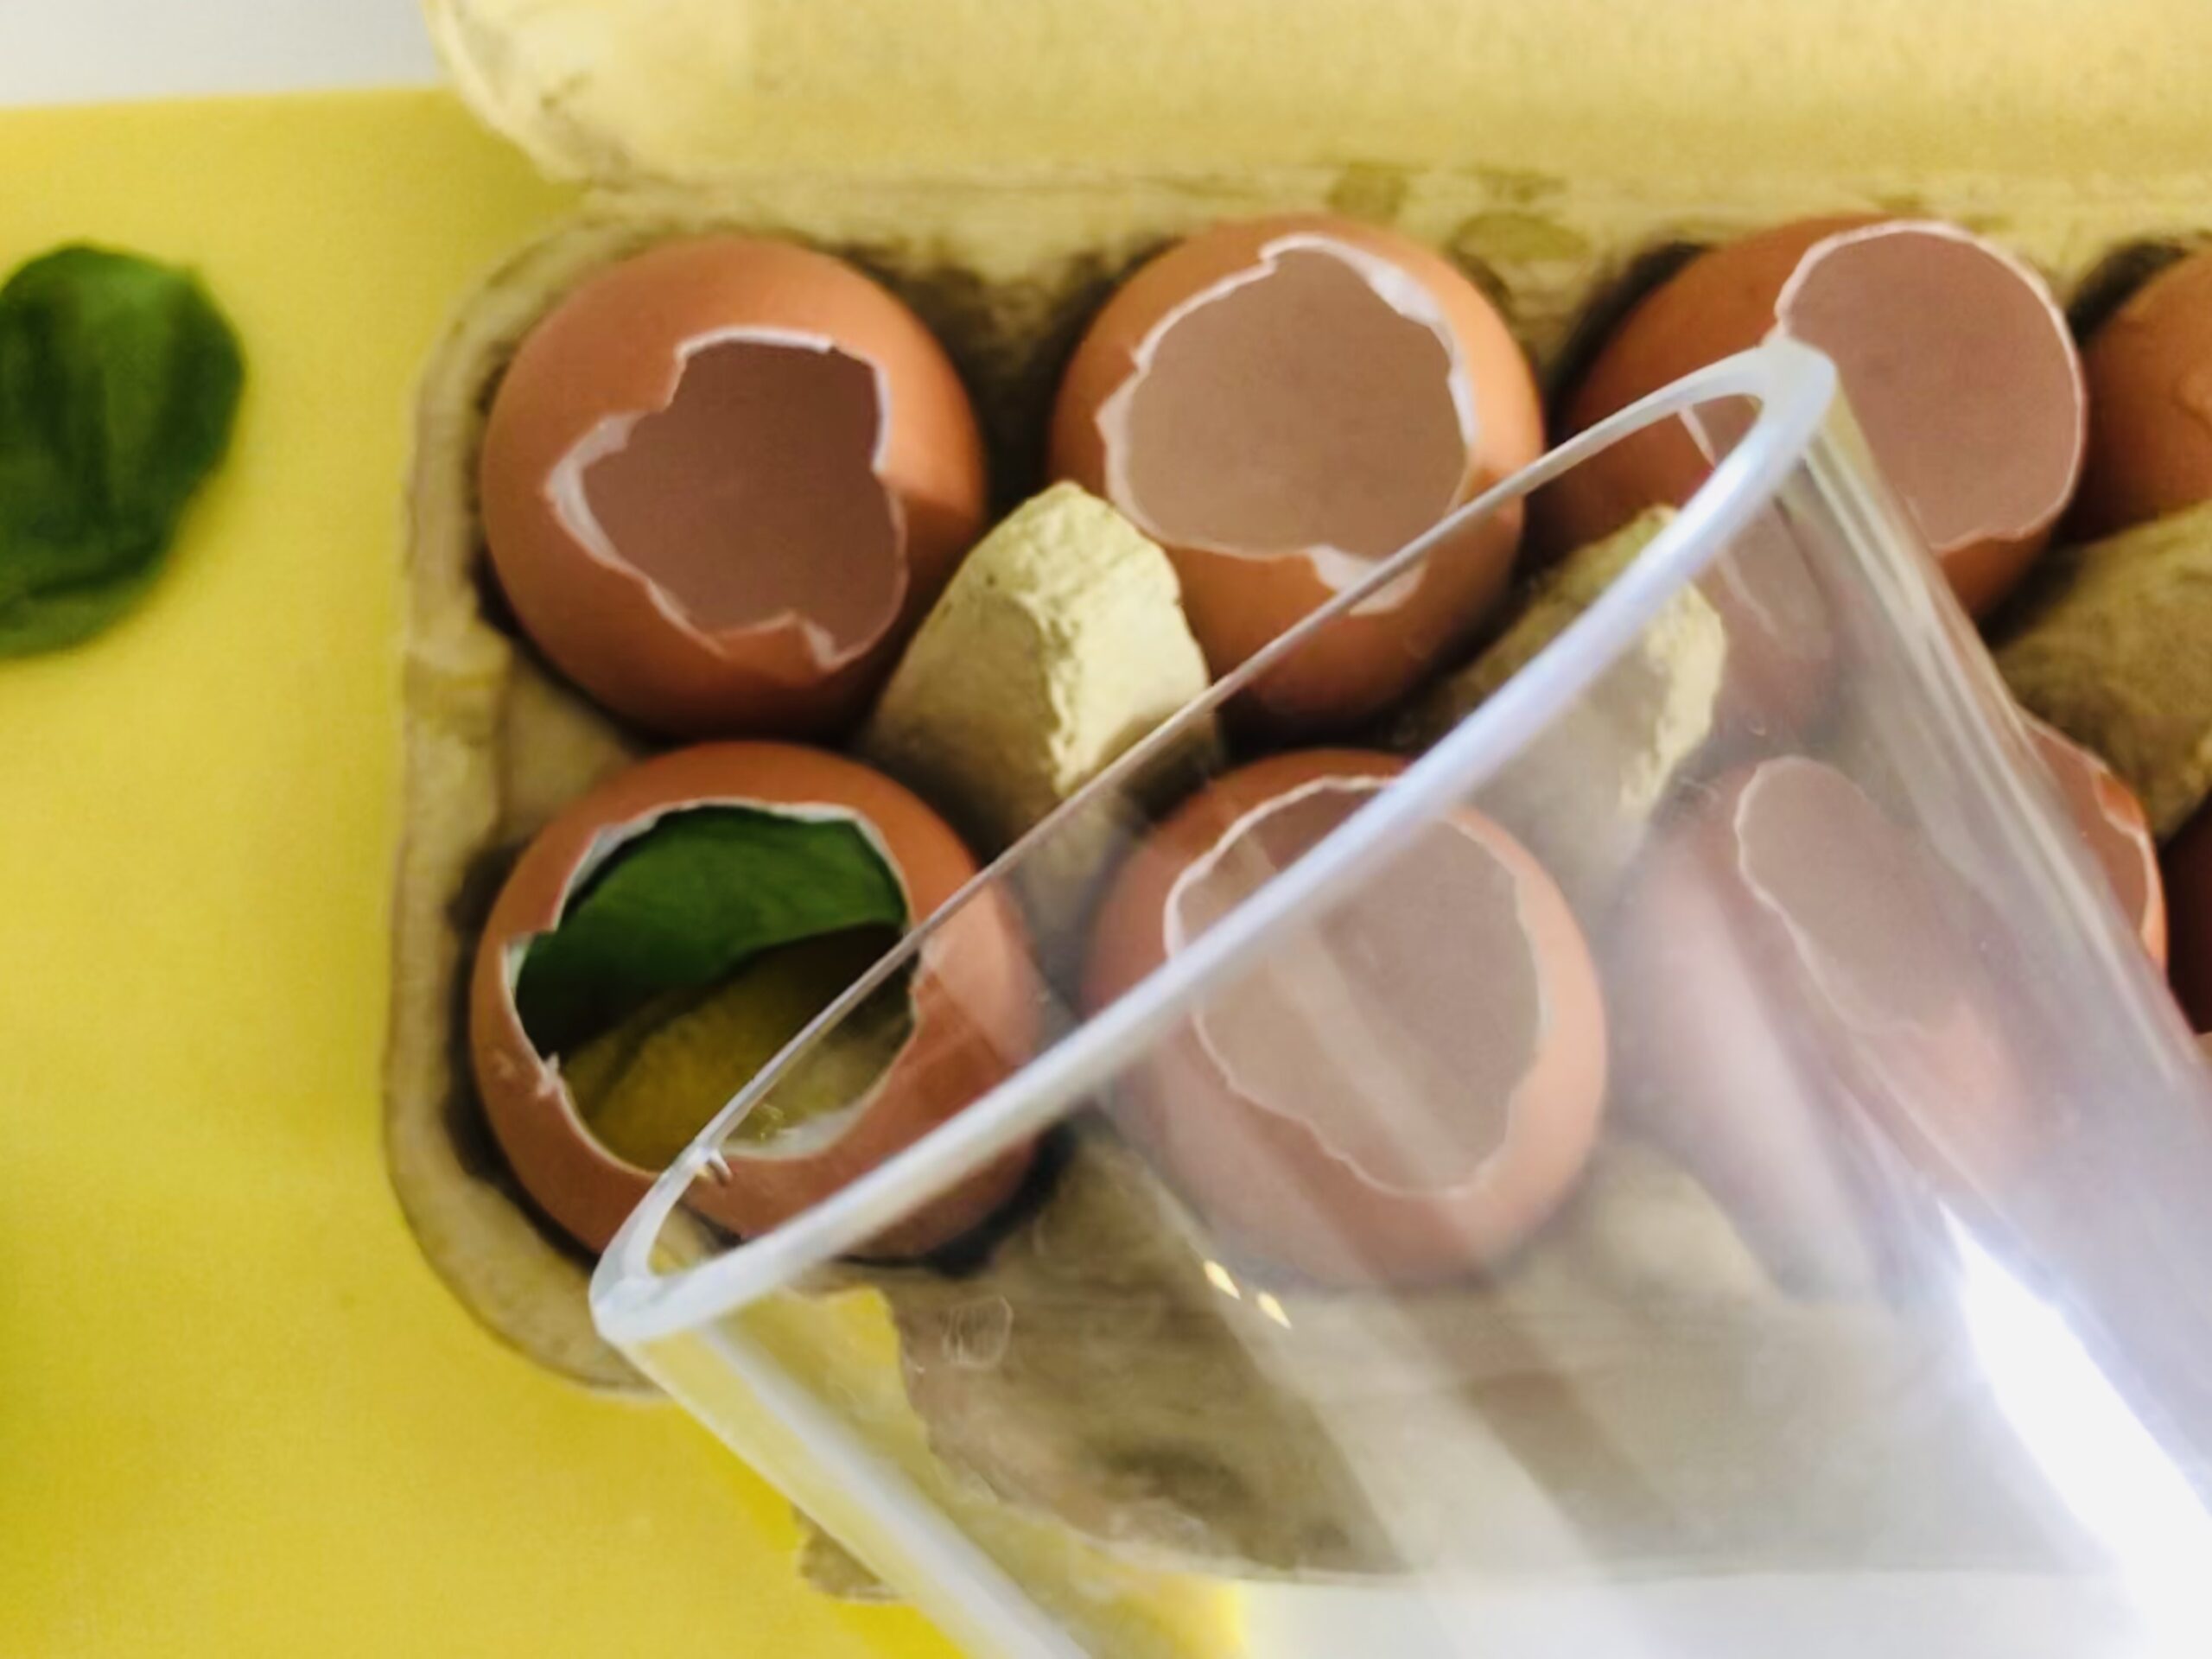 Bild zum Schritt 10 für das Bastel- und DIY-Abenteuer für Kinder: 'Danach füllt ihr die gefüllten Eierschalen mit Wasser auf.'